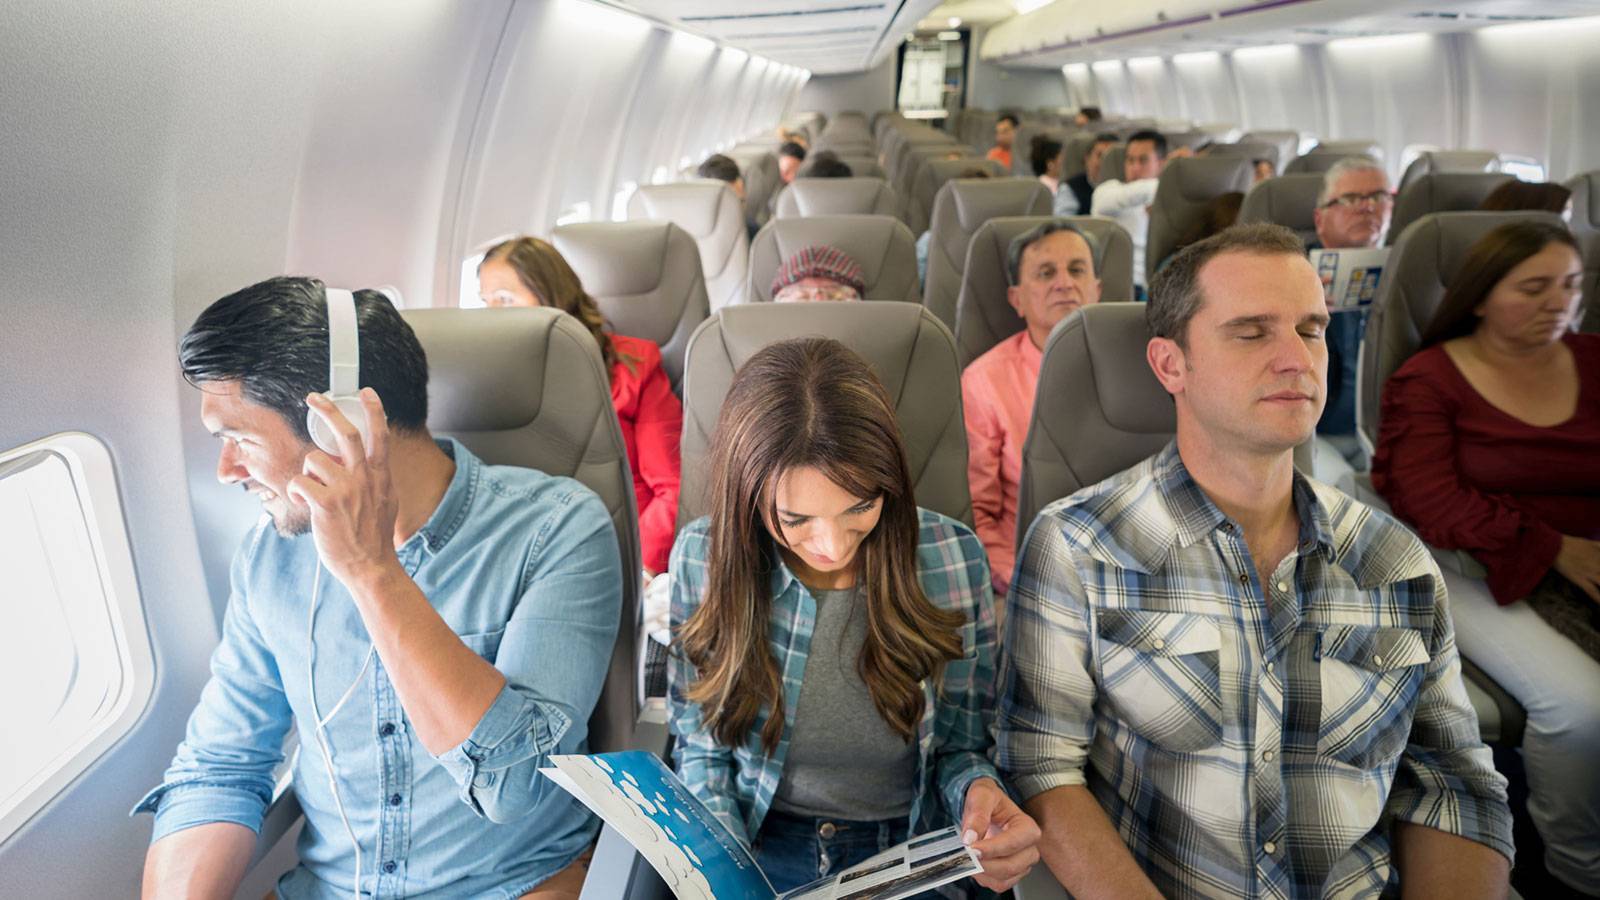 Как выбрать место в самолете